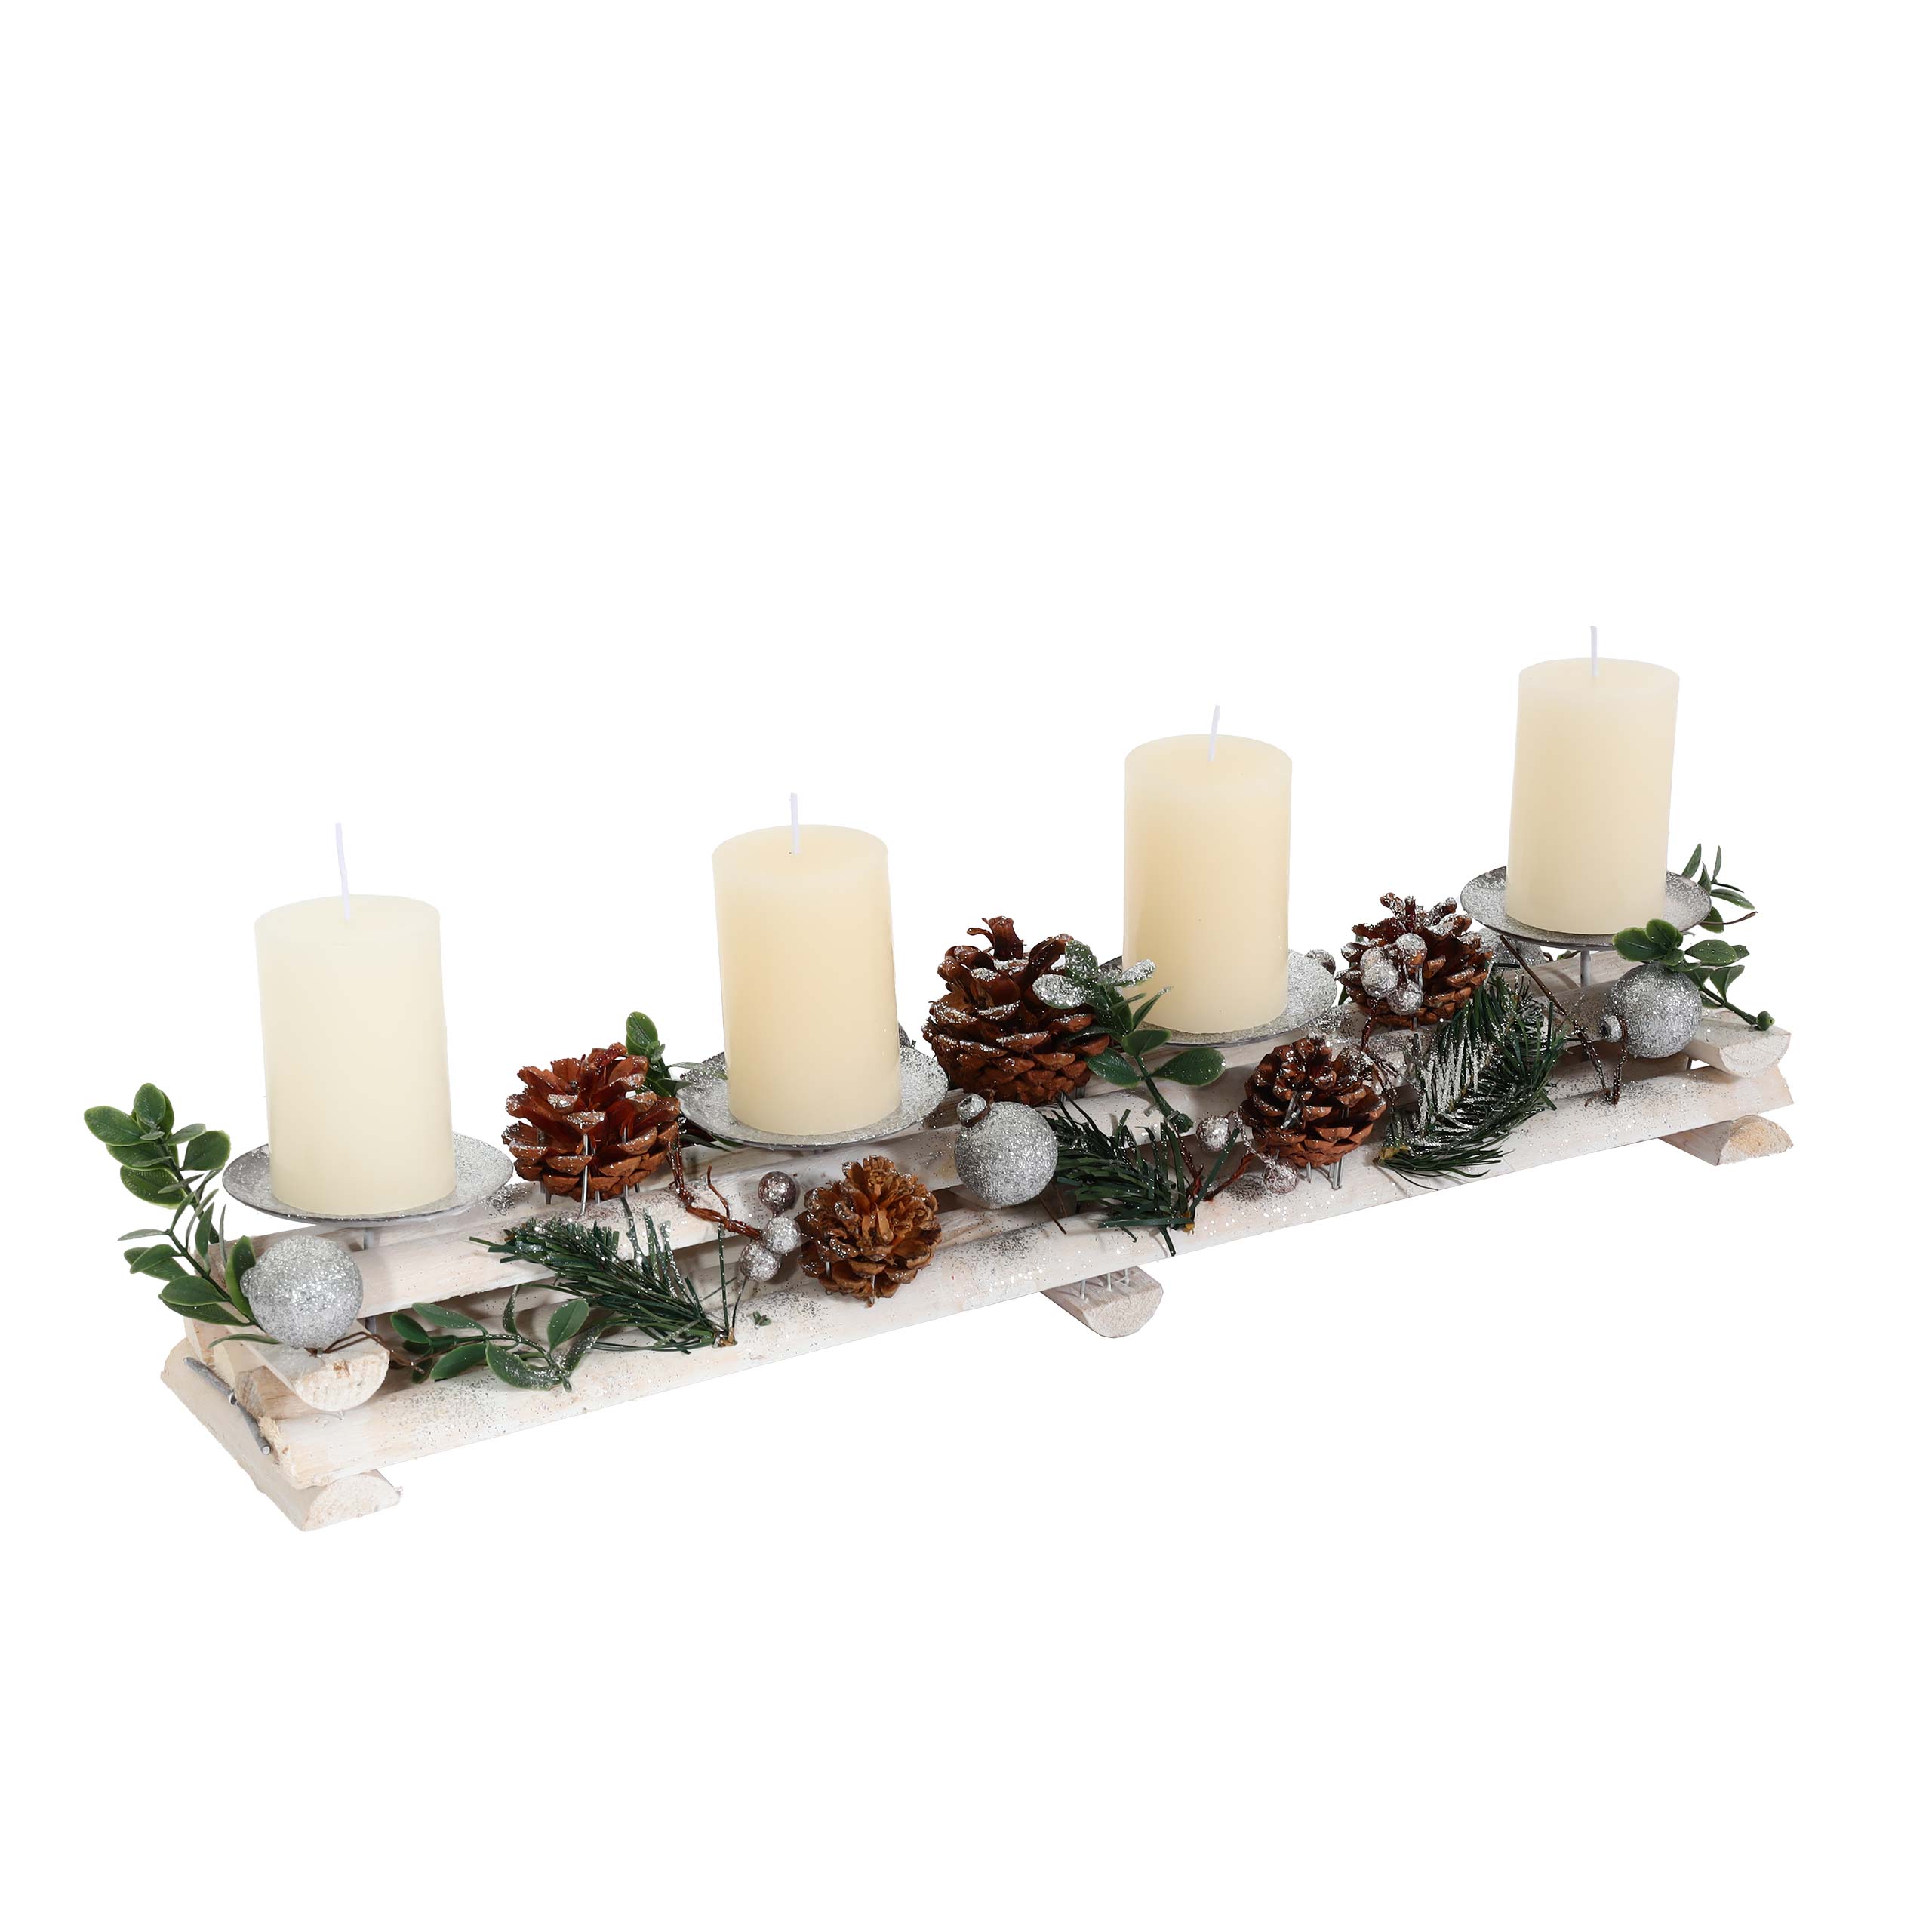 Adventsgesteck HWC-M12 mit Kerzenhaltern, Adventskranz Holz silber Weihnachtsdeko Heute-Wohnen weiß 18x49x13cm mit Kerzen von 